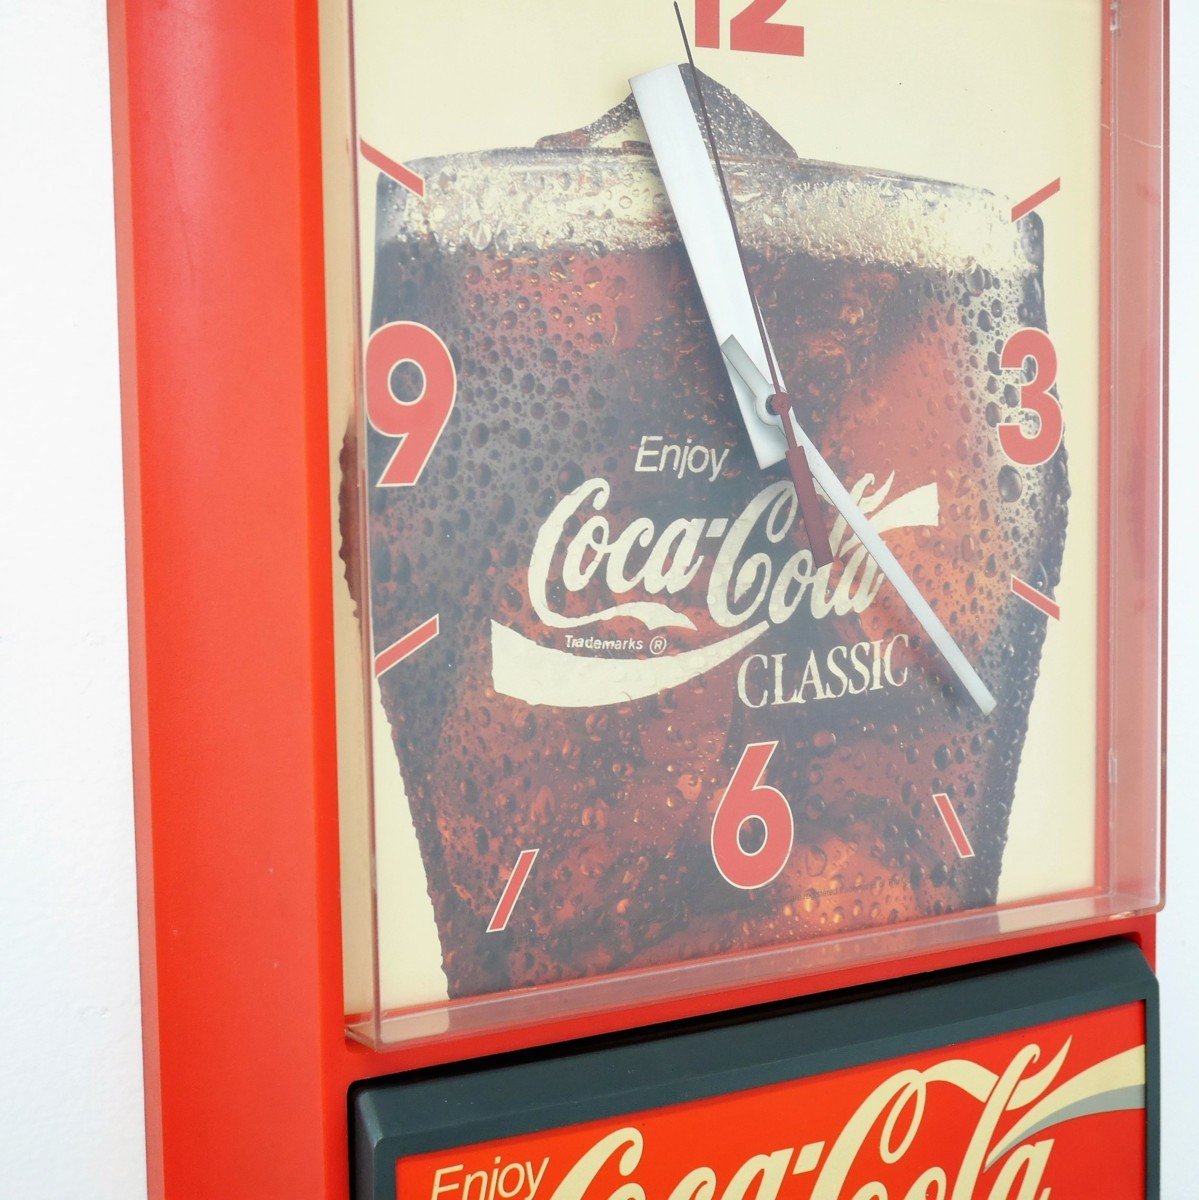 アメリカ ヴィンテージ 壁掛け時計 Coca Cola コカ・コーラ